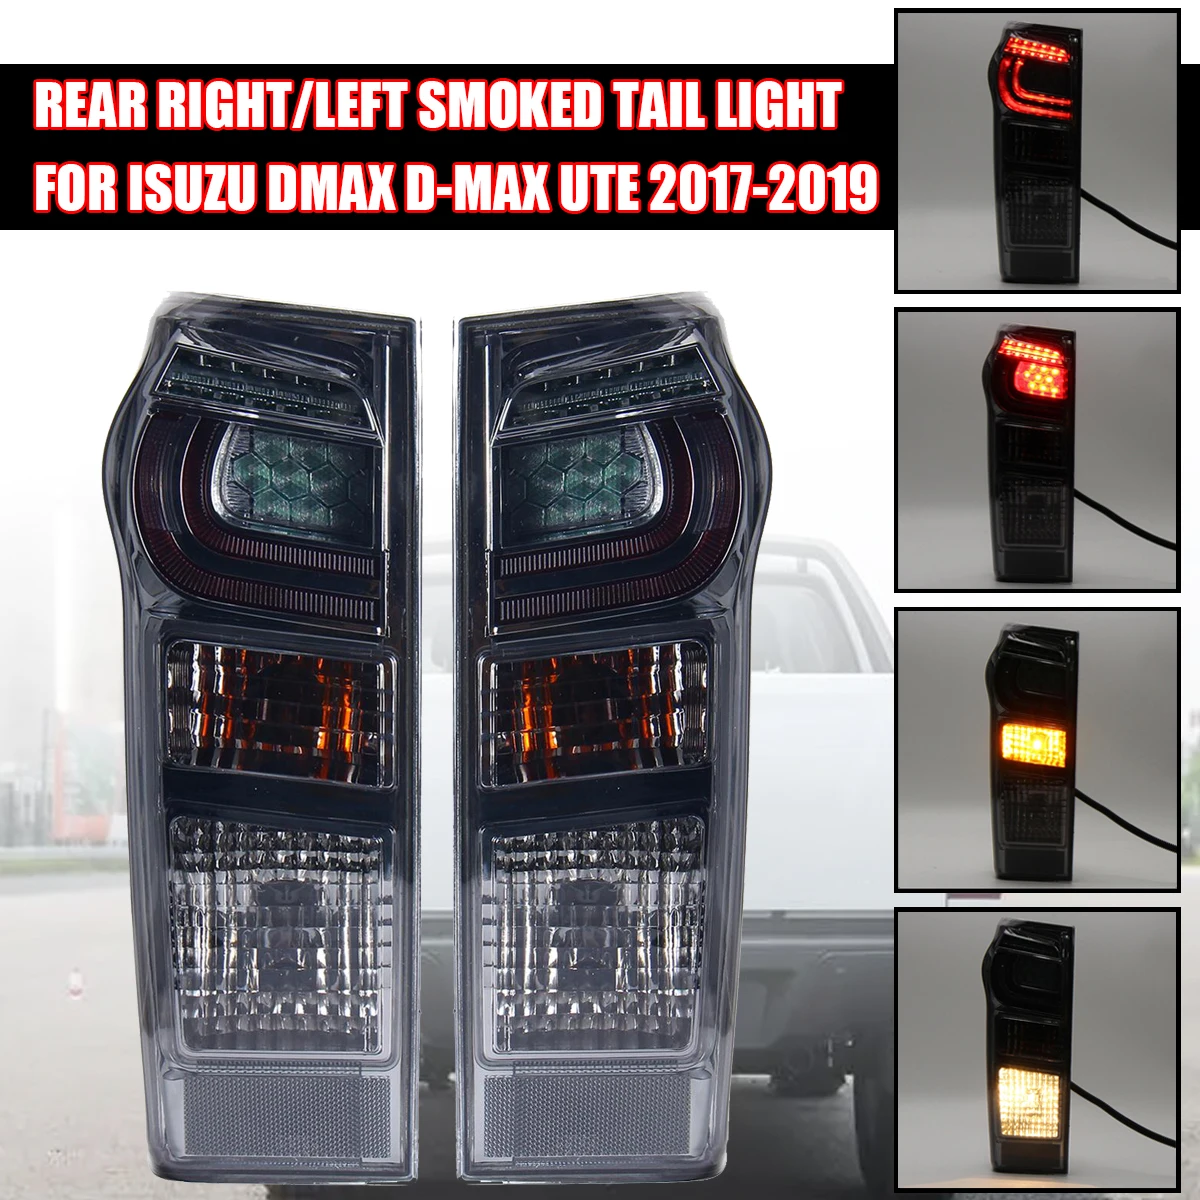 

Автомобильный задний светодиодный фонарь для Isuzu DMax D-Max Ute 2017 2018 2019 со сменными лампами жгута проводов 8961253983 898125393